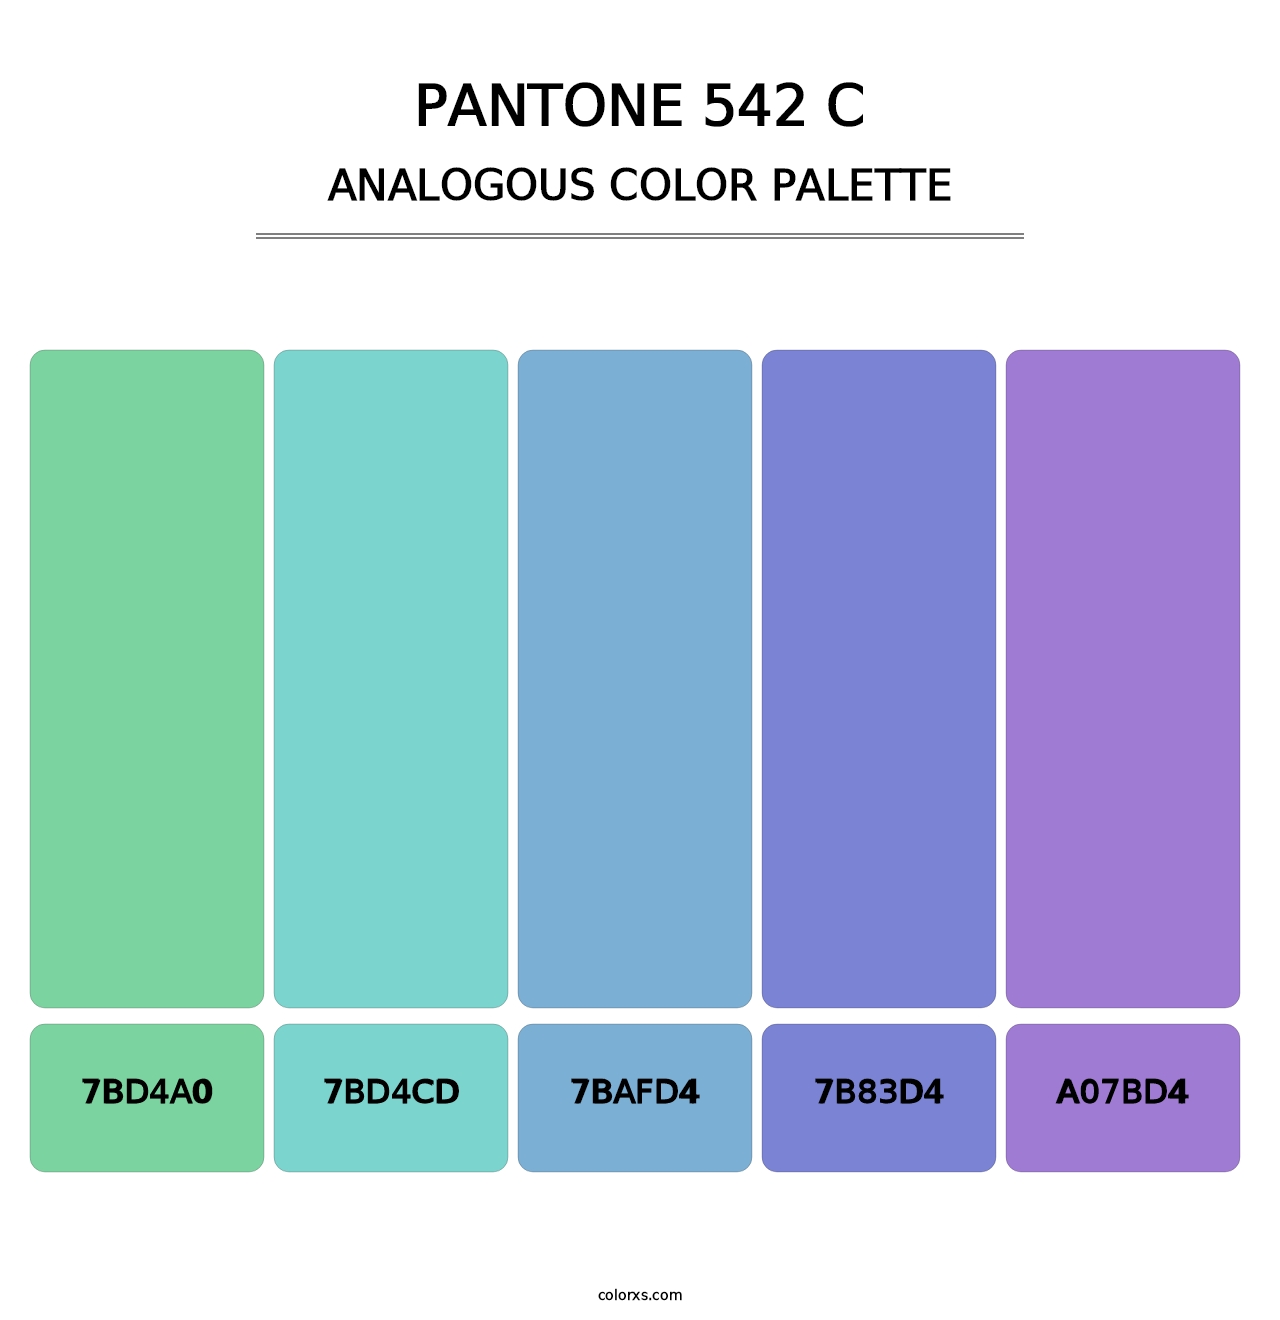 PANTONE 542 C - Analogous Color Palette